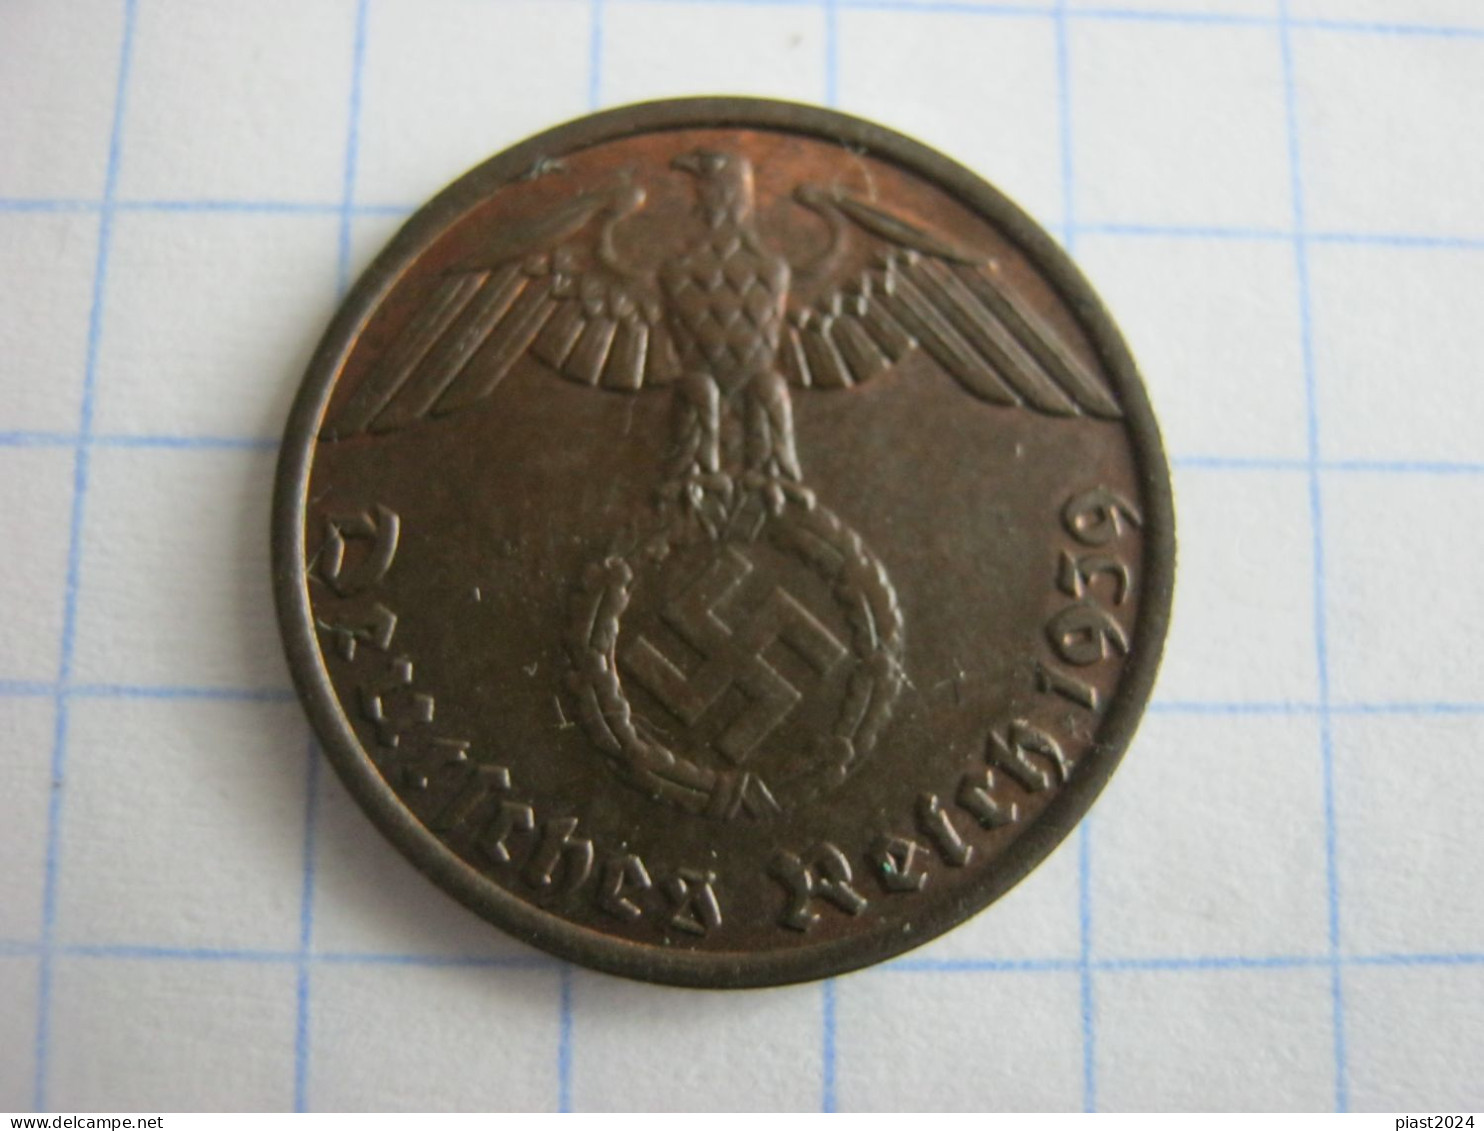 Germany 1 Reichspfennig 1939 B - 1 Reichspfennig